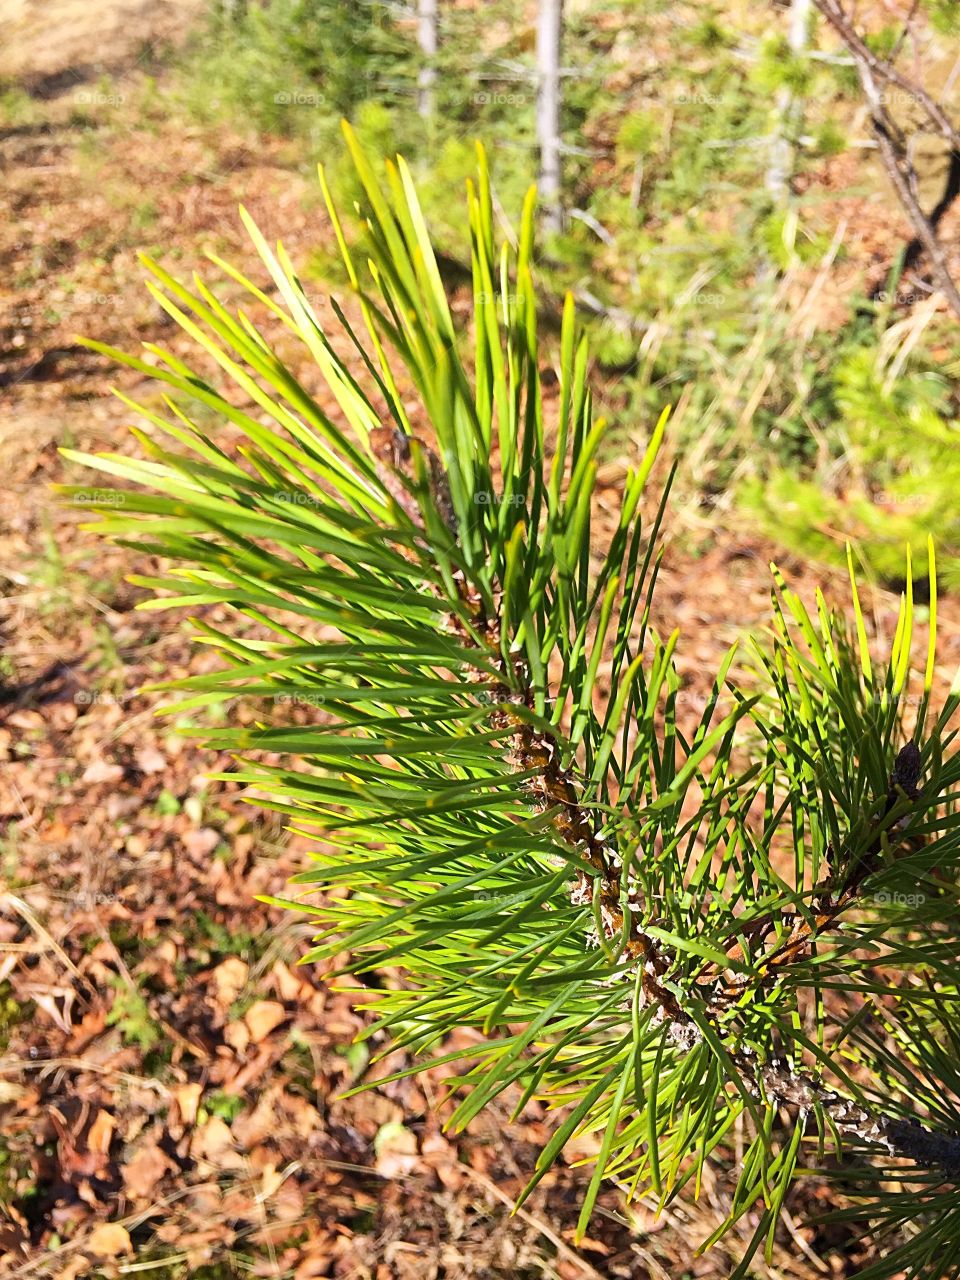 Spruce needle 